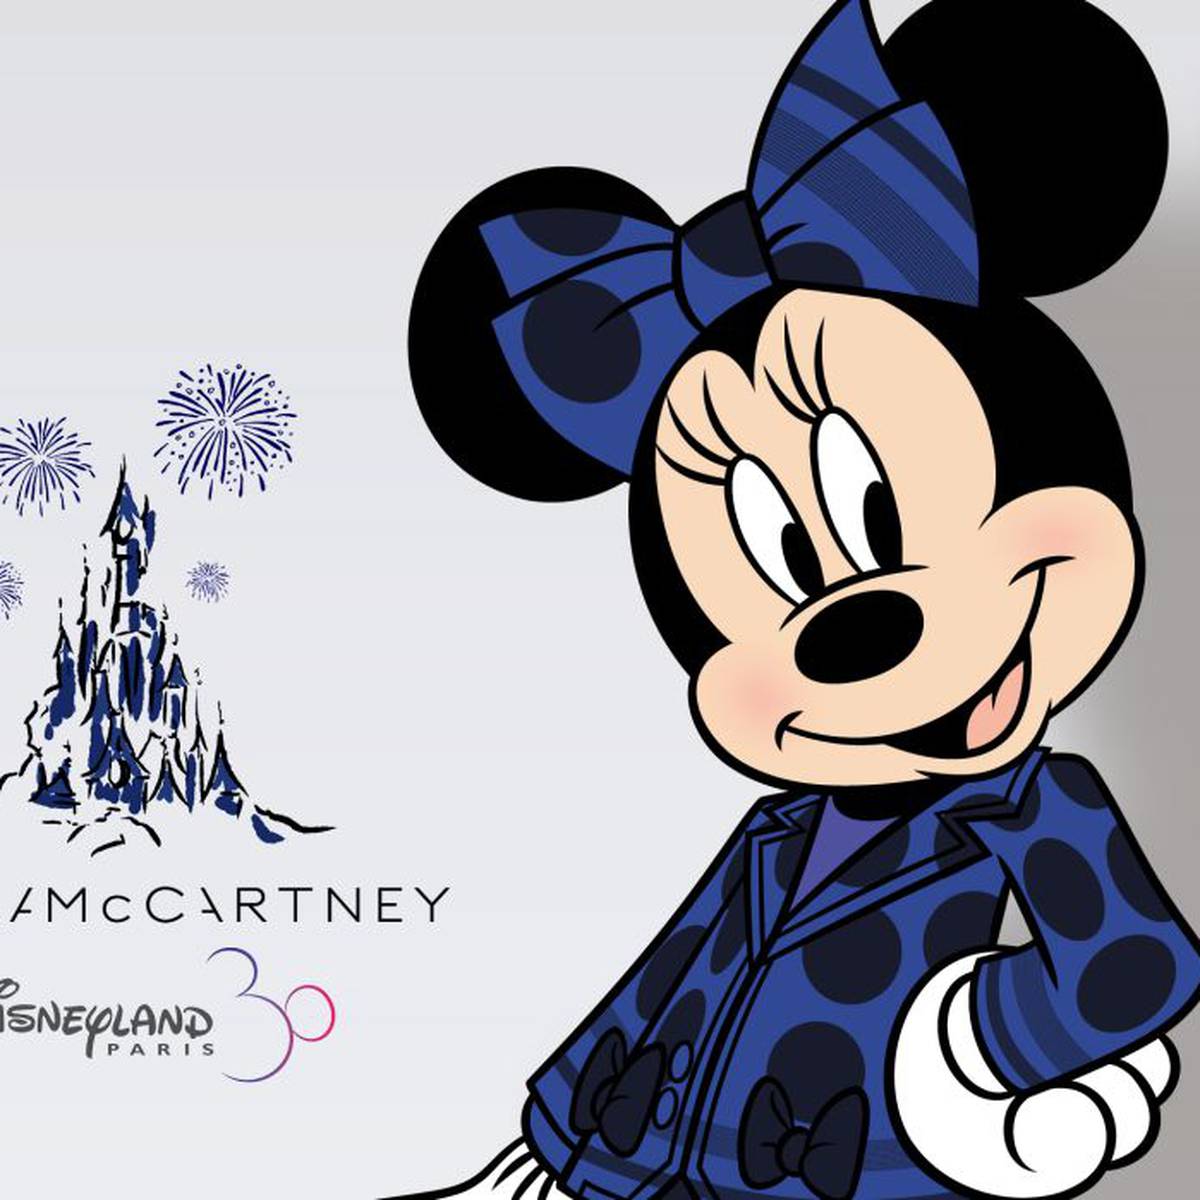 Por primera vez en su historia, Minnie Mouse llevará pantalones | Ocio y  cultura | Cadena SER